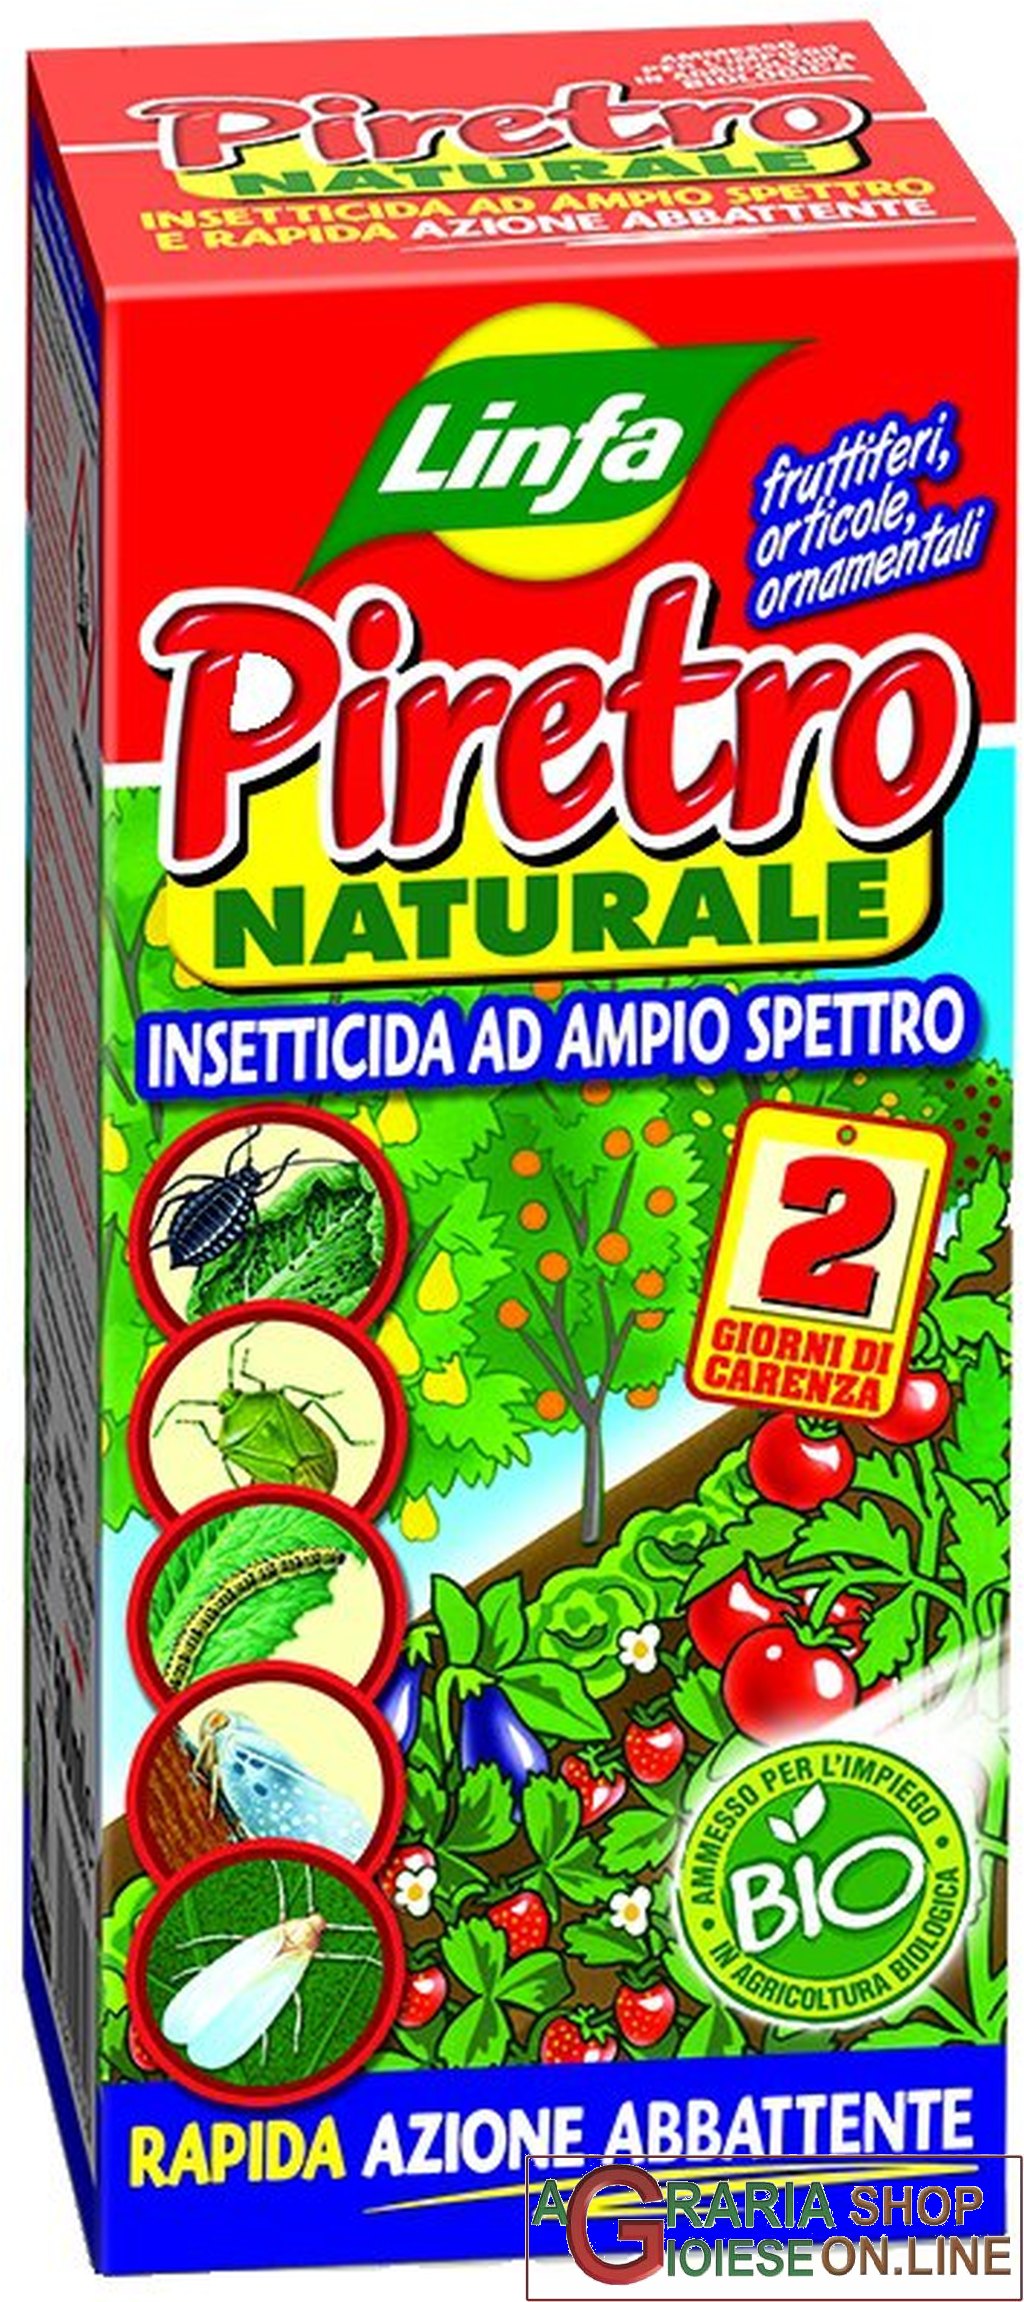 LINFA PIRETRO NATURALE INSETTICIDA AD AMPIO SPETTRO BIOLOGICO ML. 500 -  Chiara De Caria shop on line